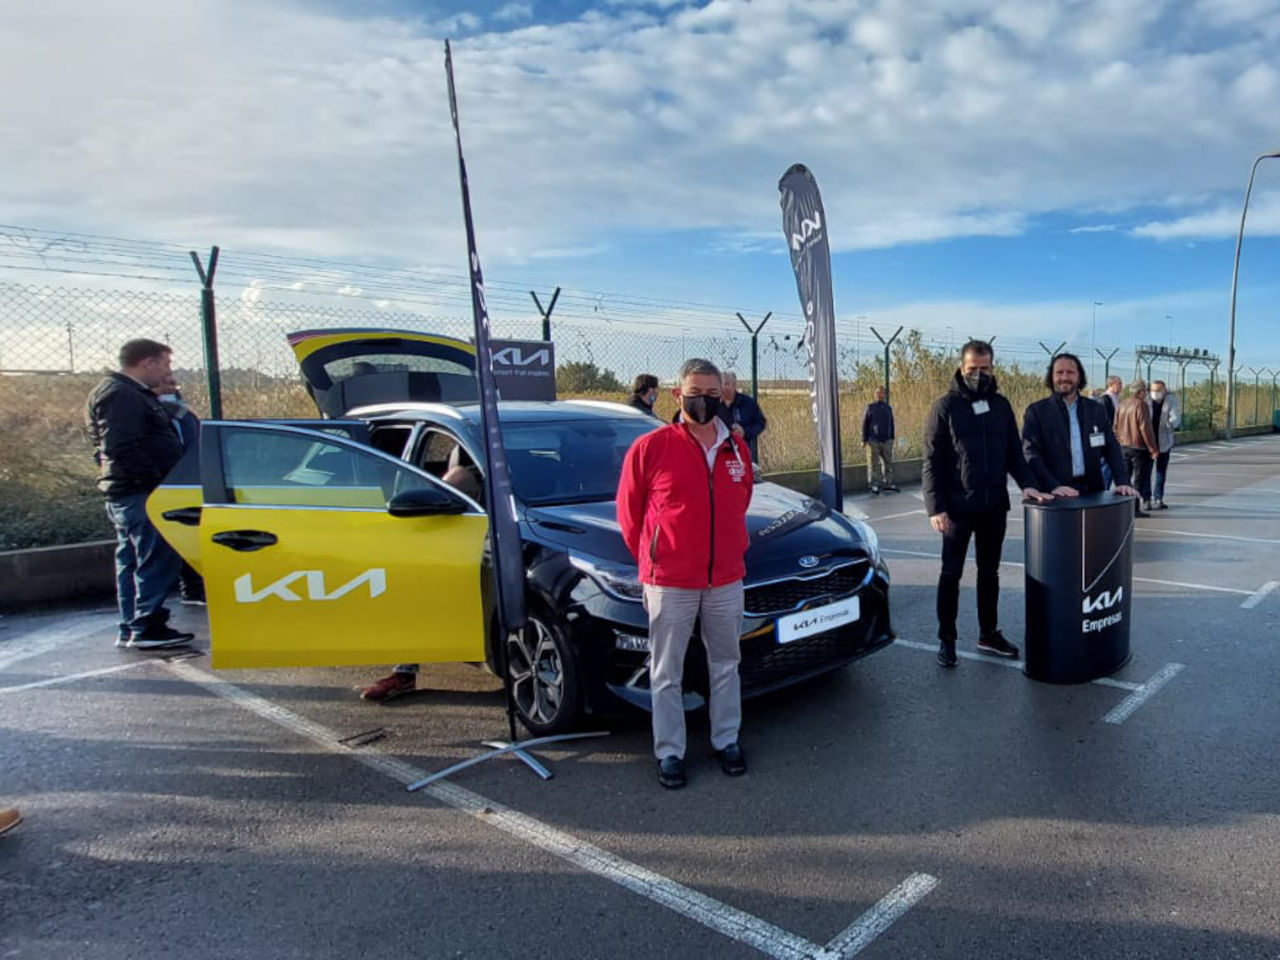 El Kia Ceed Tourer ya puede prestar servicio de taxi en el área metropolitana de Barcelona